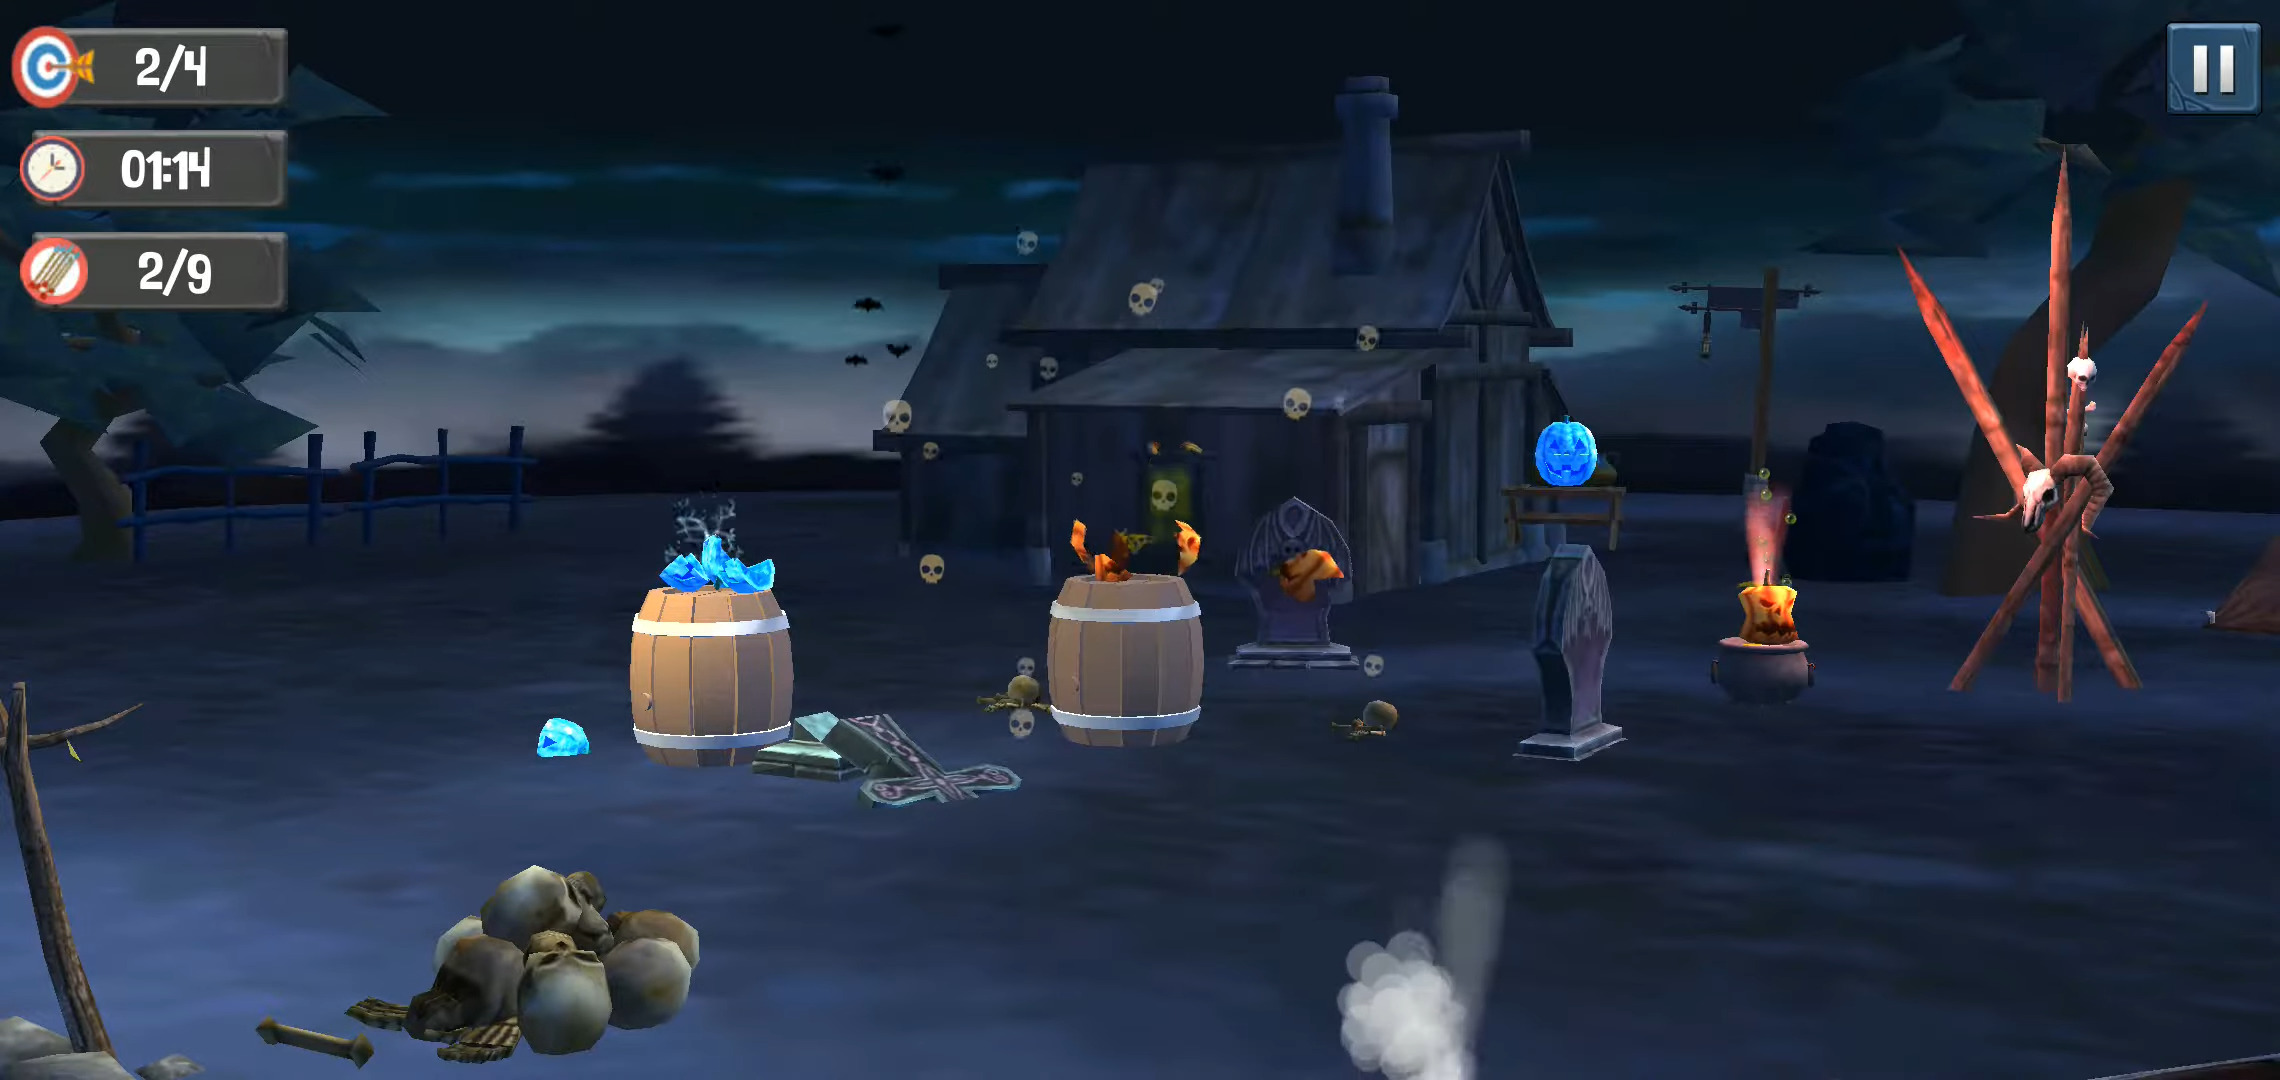 Pumpkin Shooter - Halloween - Android game screenshots.